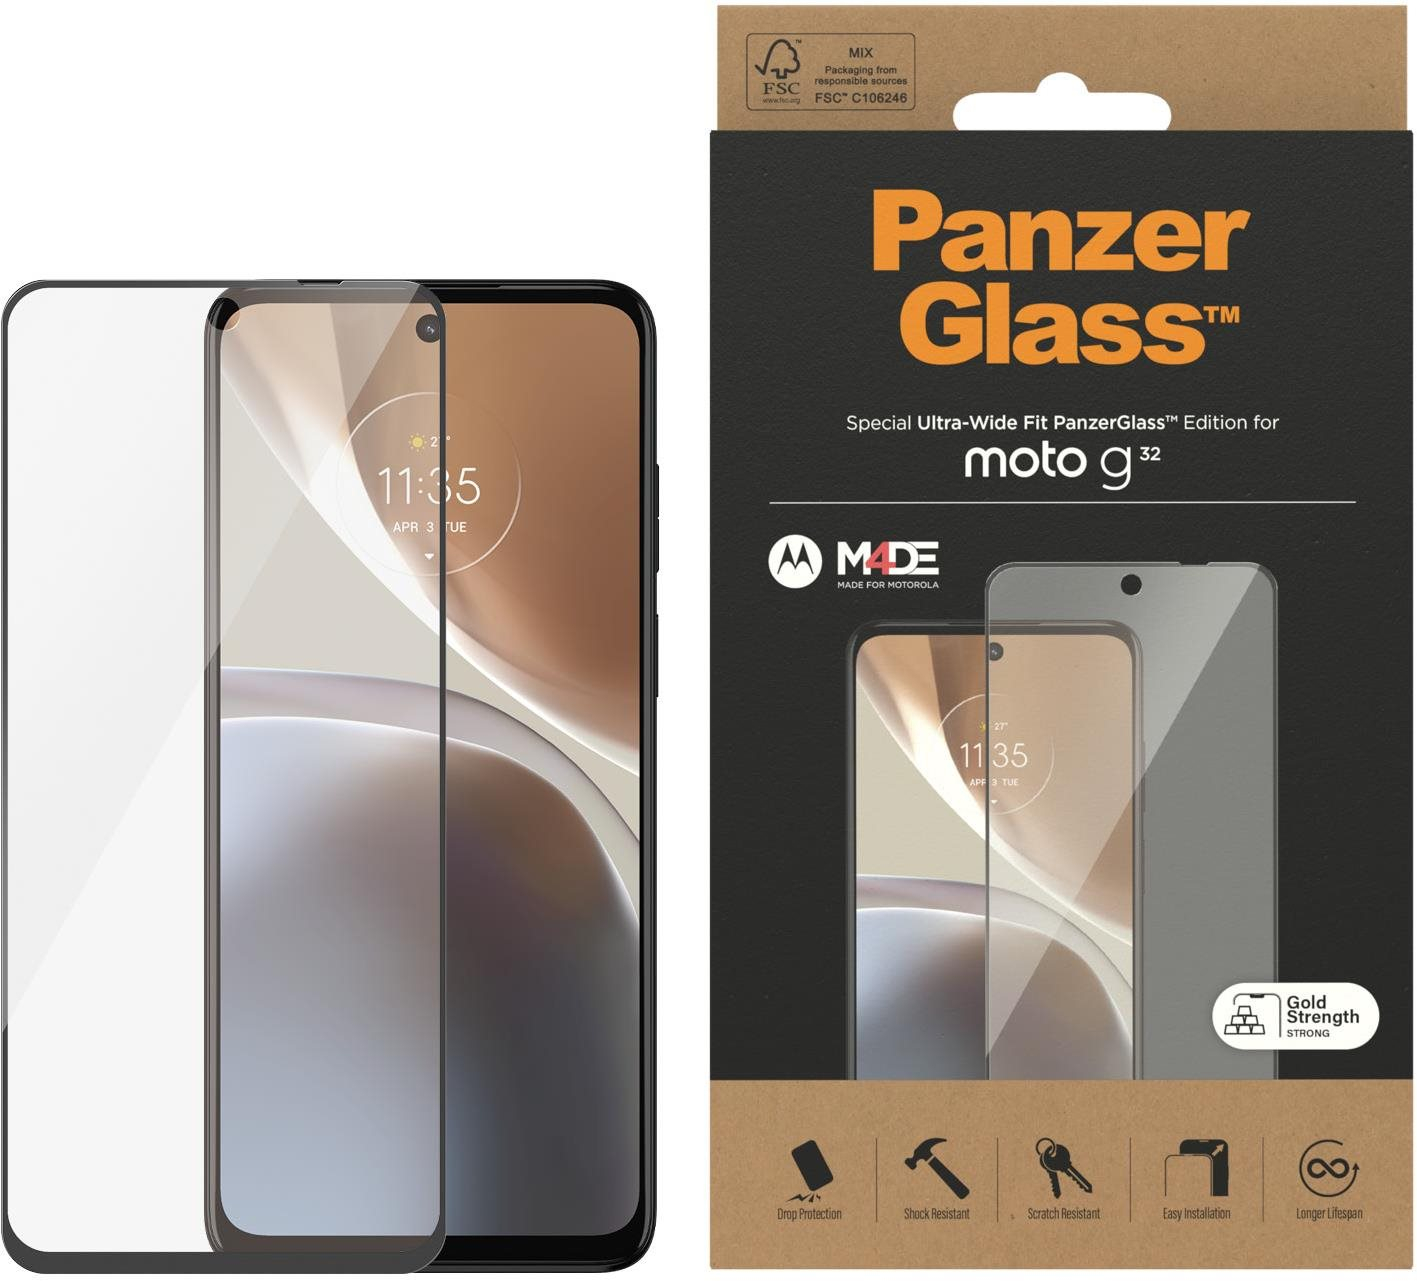 Üvegfólia PanzerGlass Motorola Moto G32 üvegfólia